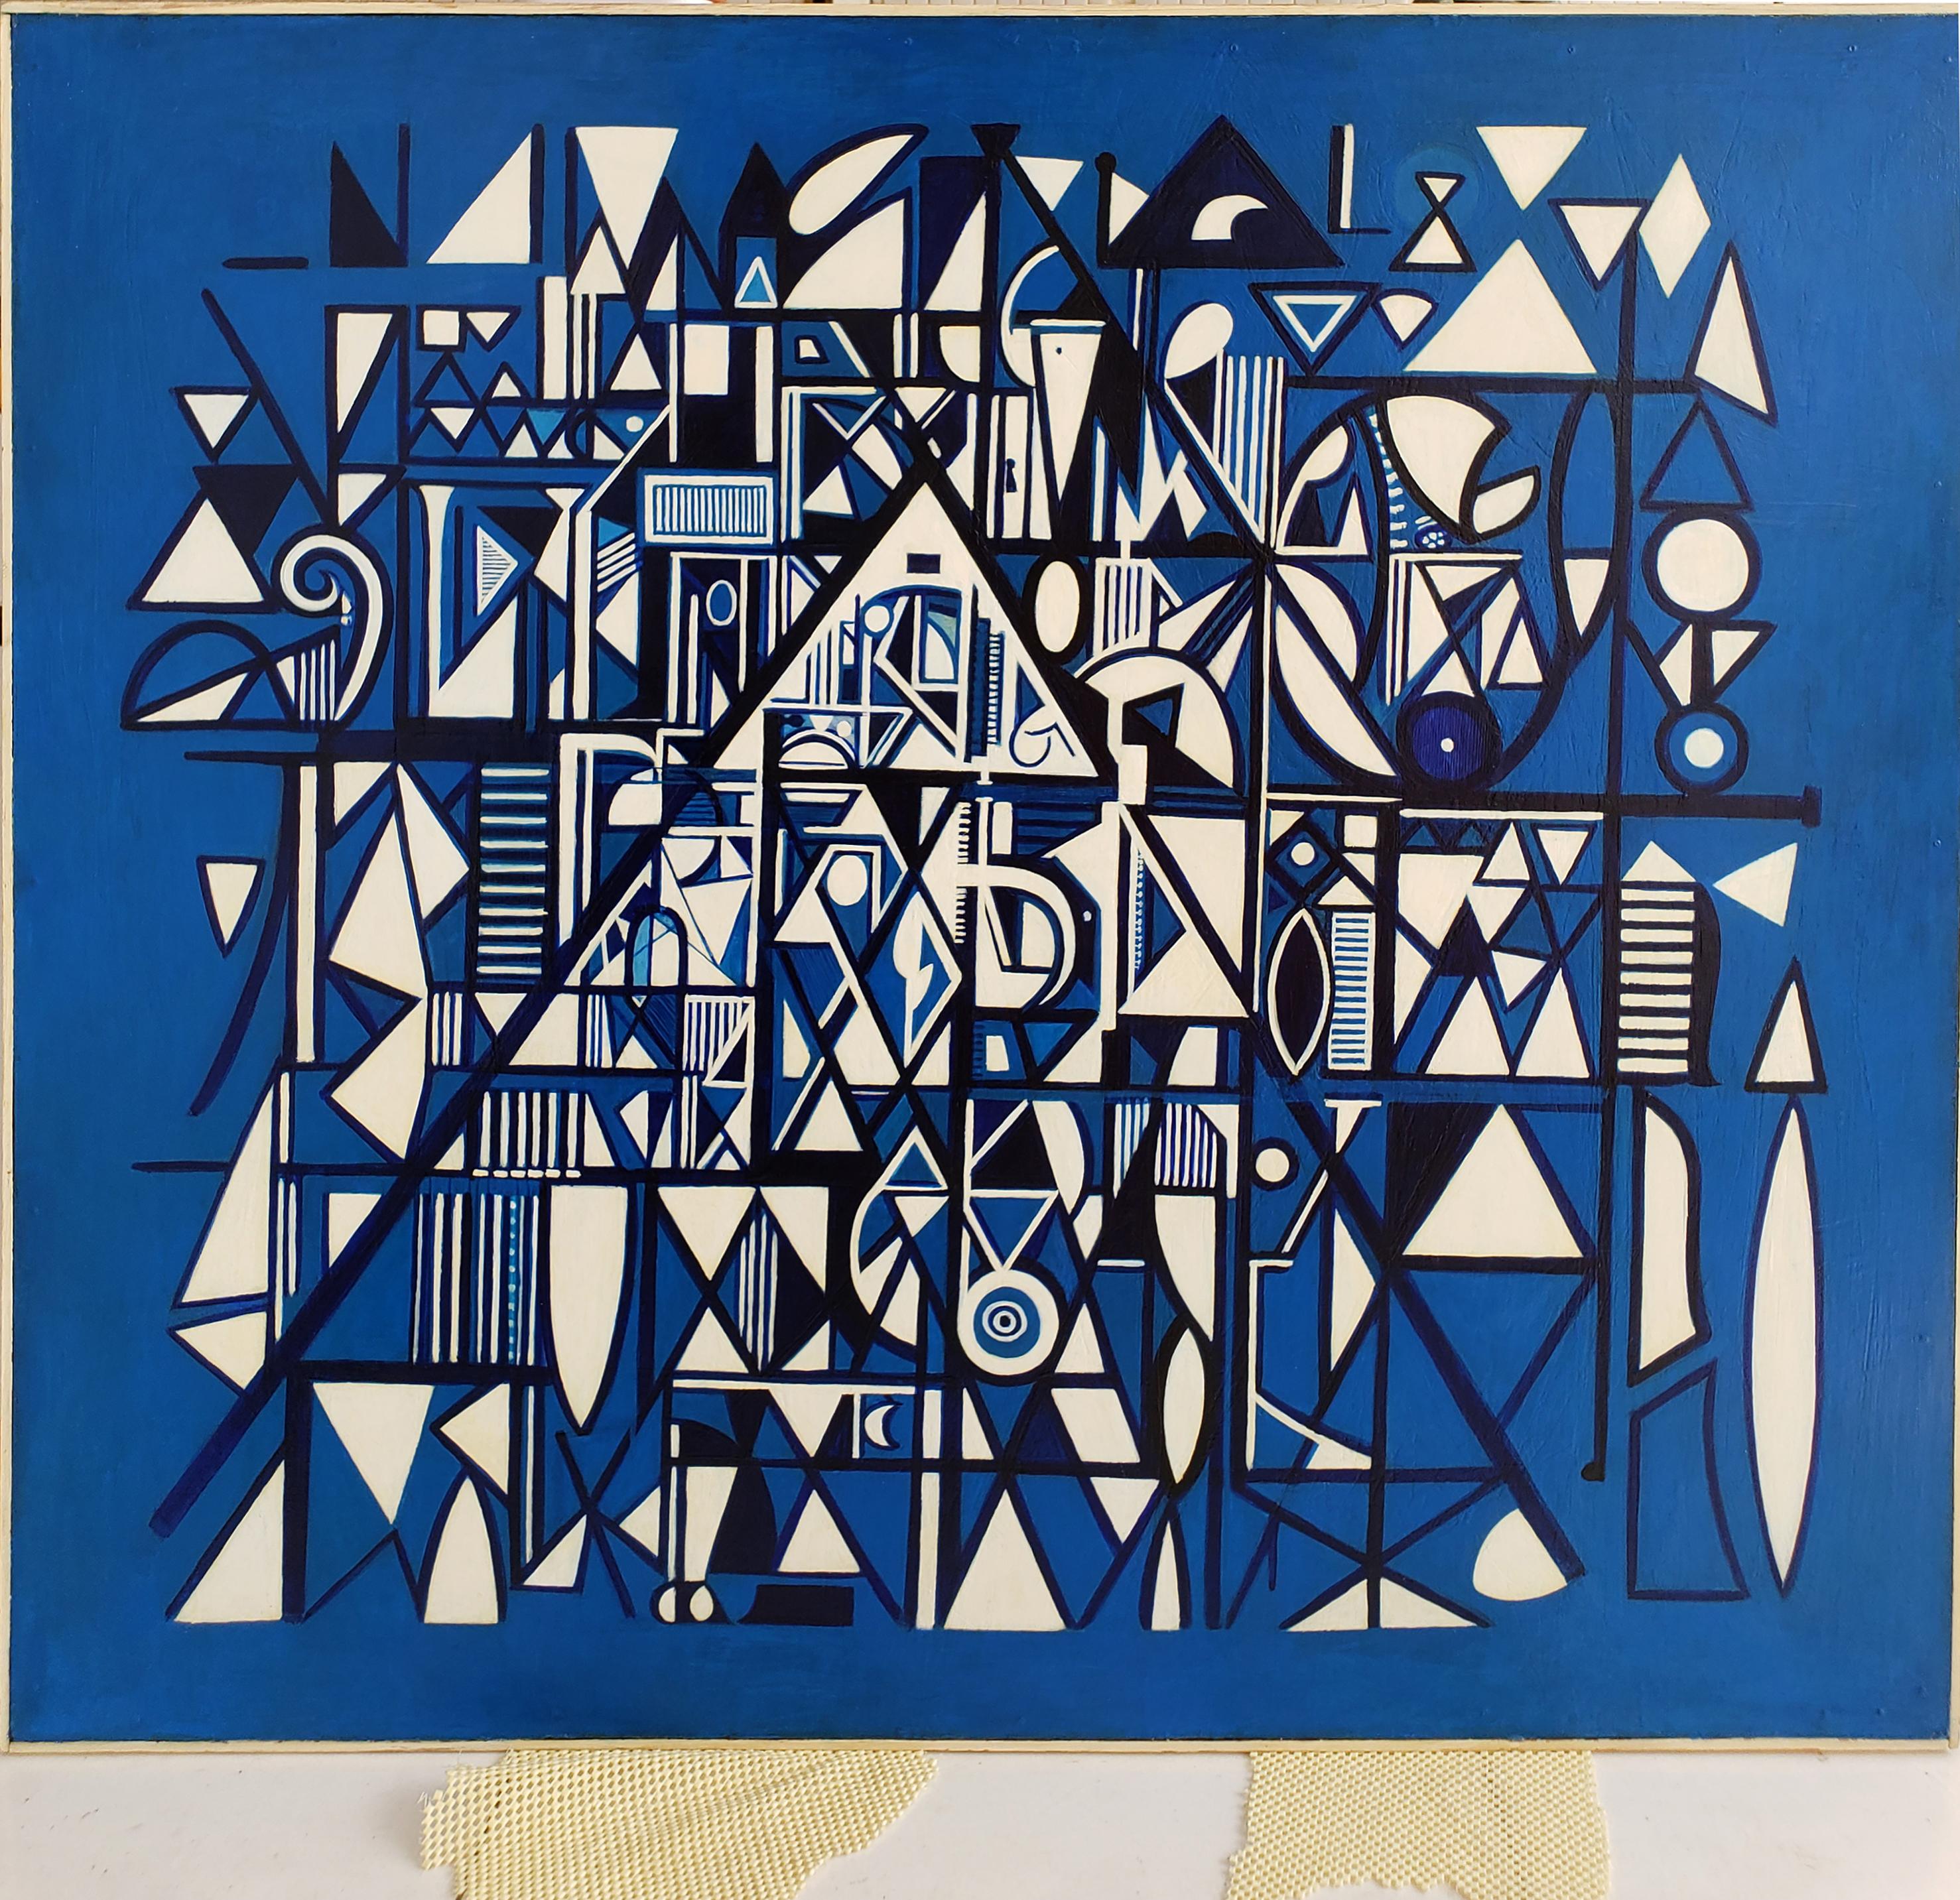 Acryl auf Masonit.  Dies ist ein zentrales Werk in tiefem und strahlendem Kobaltblau aus dem Jahr 1950.  Es zeigt kalligraphische und hieroglyphische Strukturen auf einem Raster und einer pyramidenförmigen Basis durch das  Abstrakter Expressionist